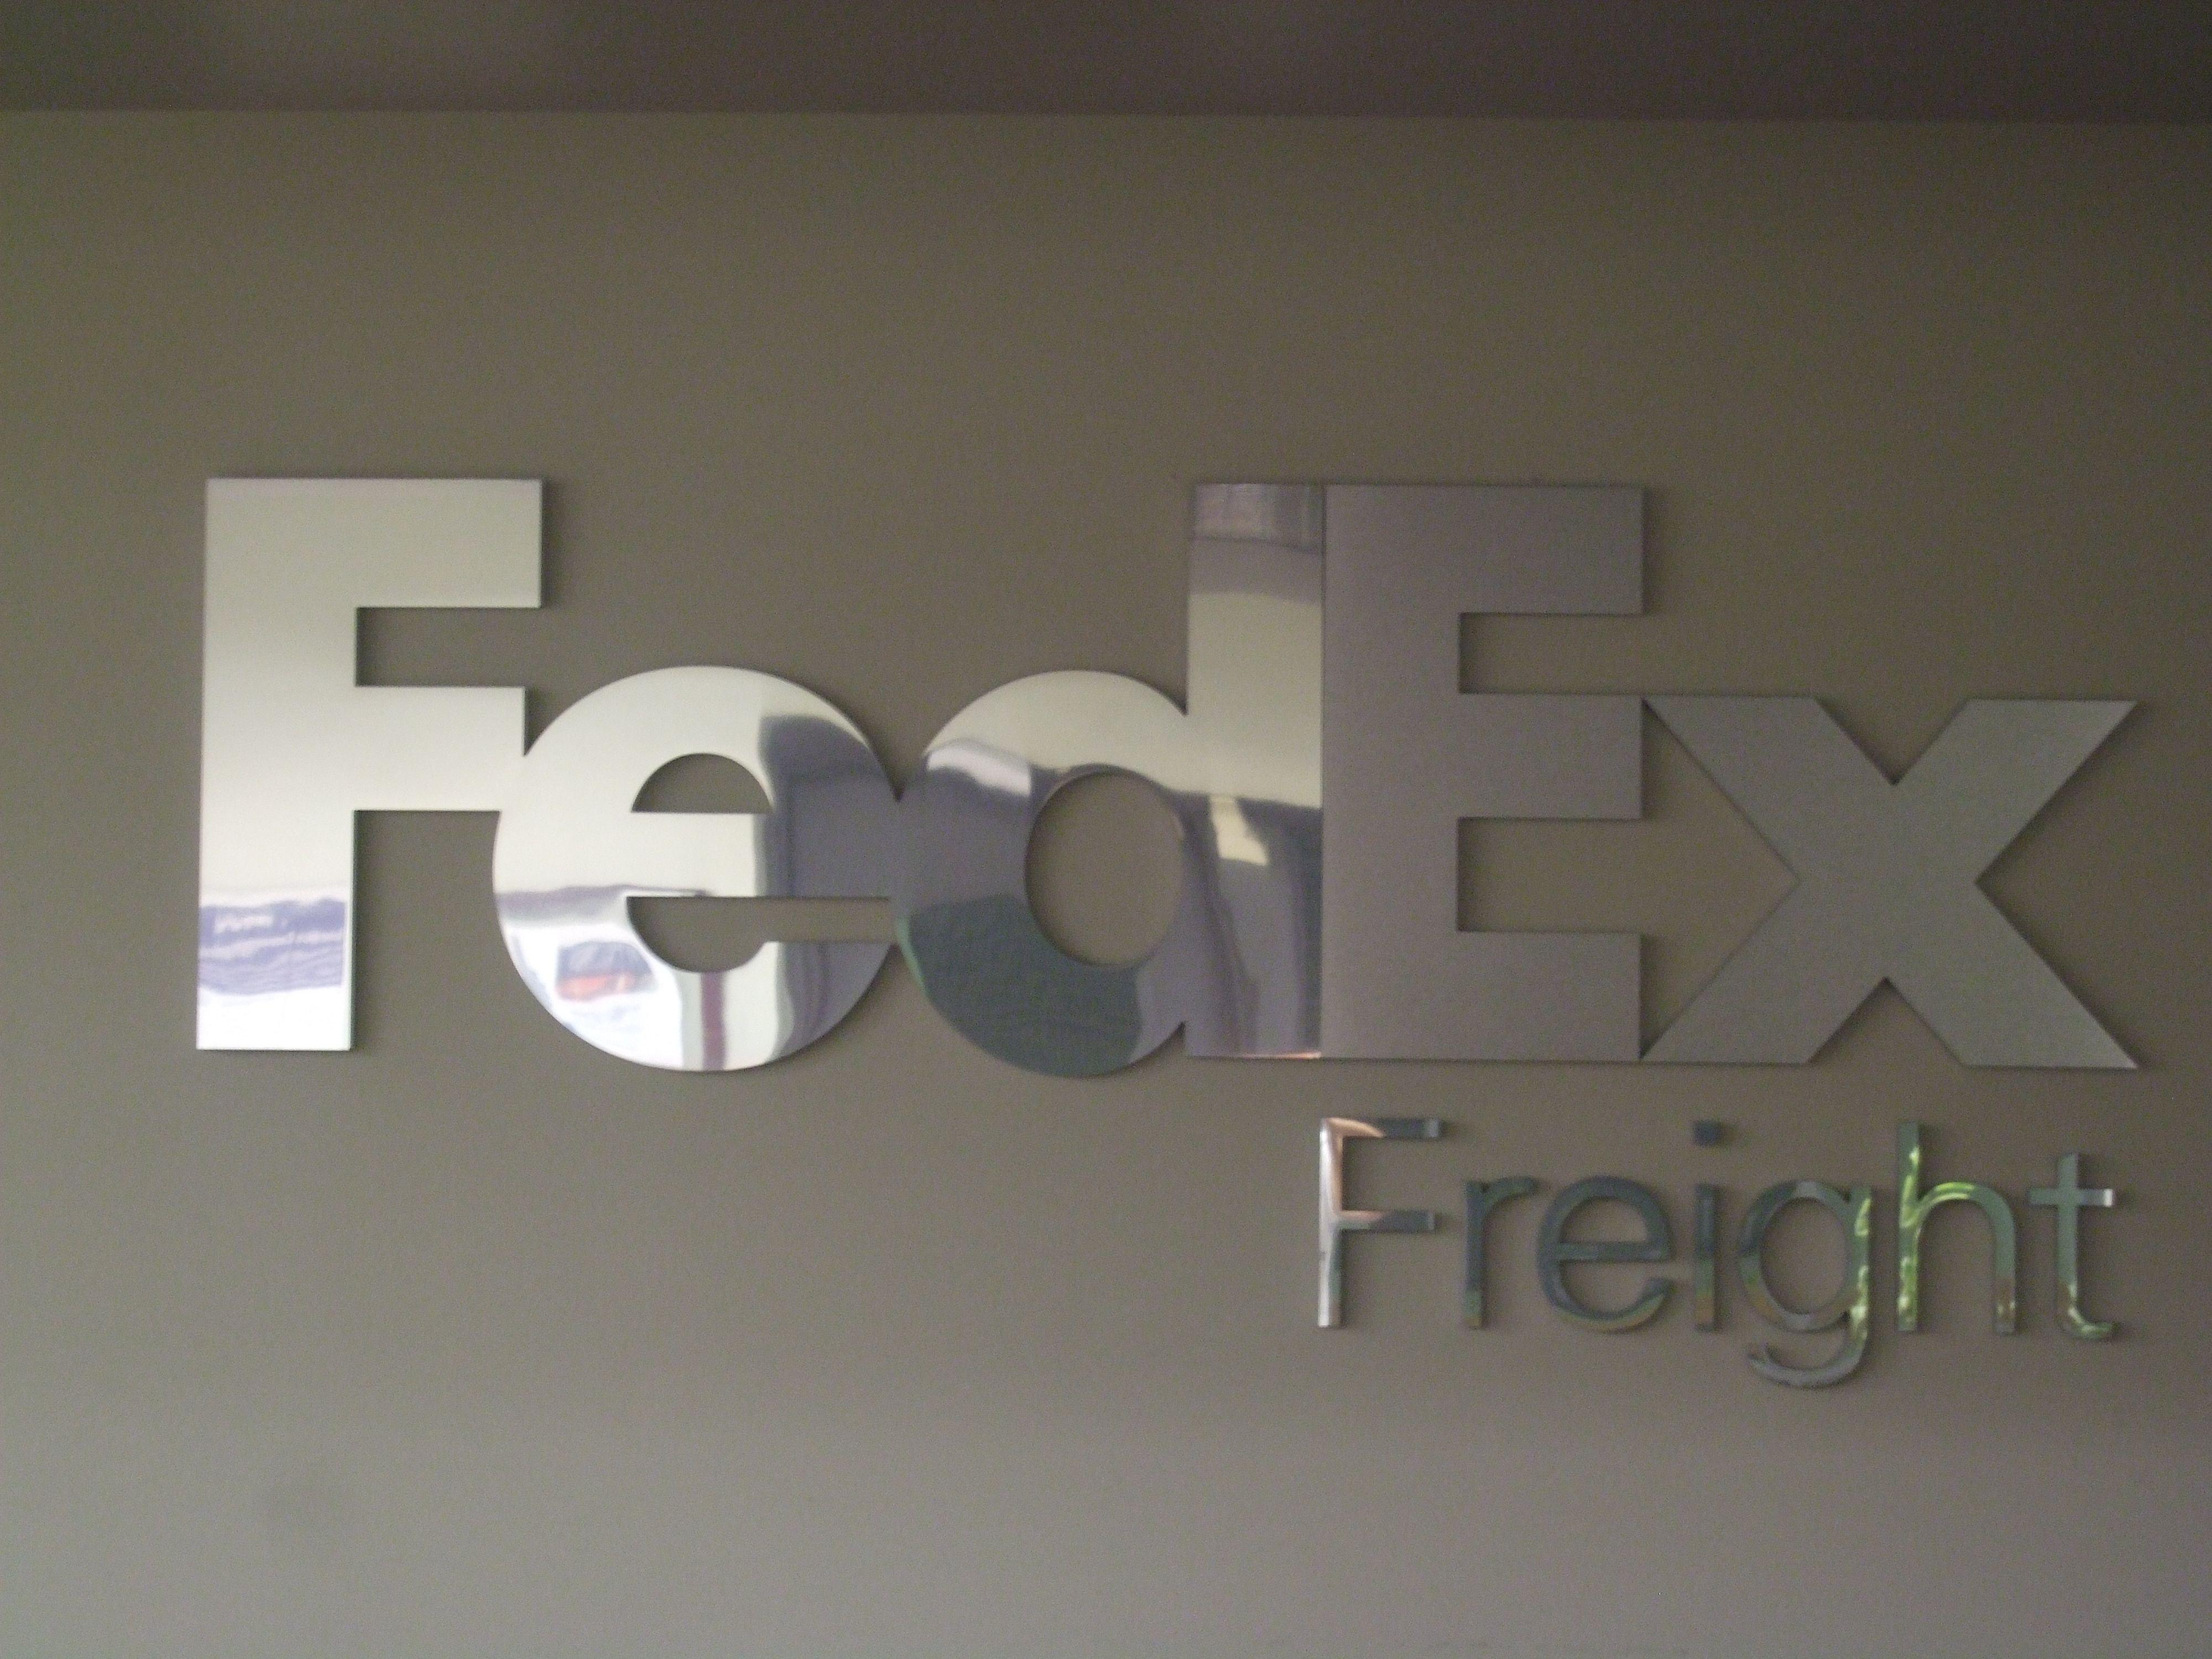 FedEx Freight Logo - FedEx Freight logo at Wilson Avenue | FedEx | Fedex express, Parcel ...